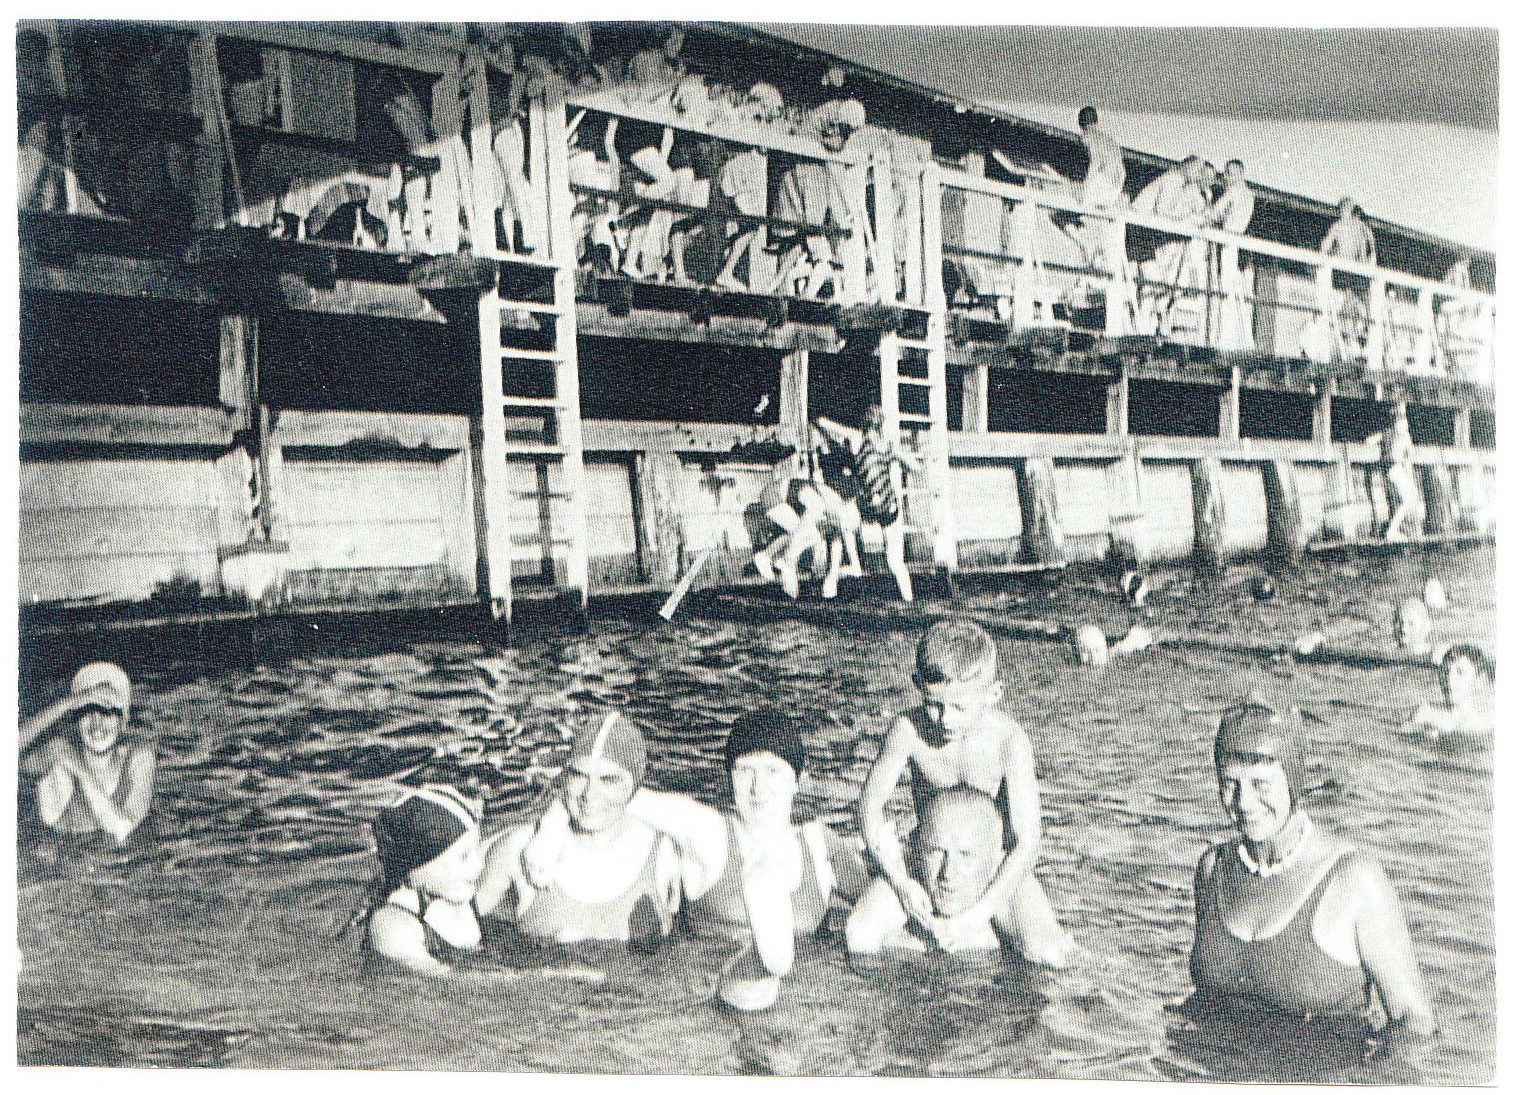 Schwimmbadbetrieb Germaniabad (Wird bei Klick vergrößert)